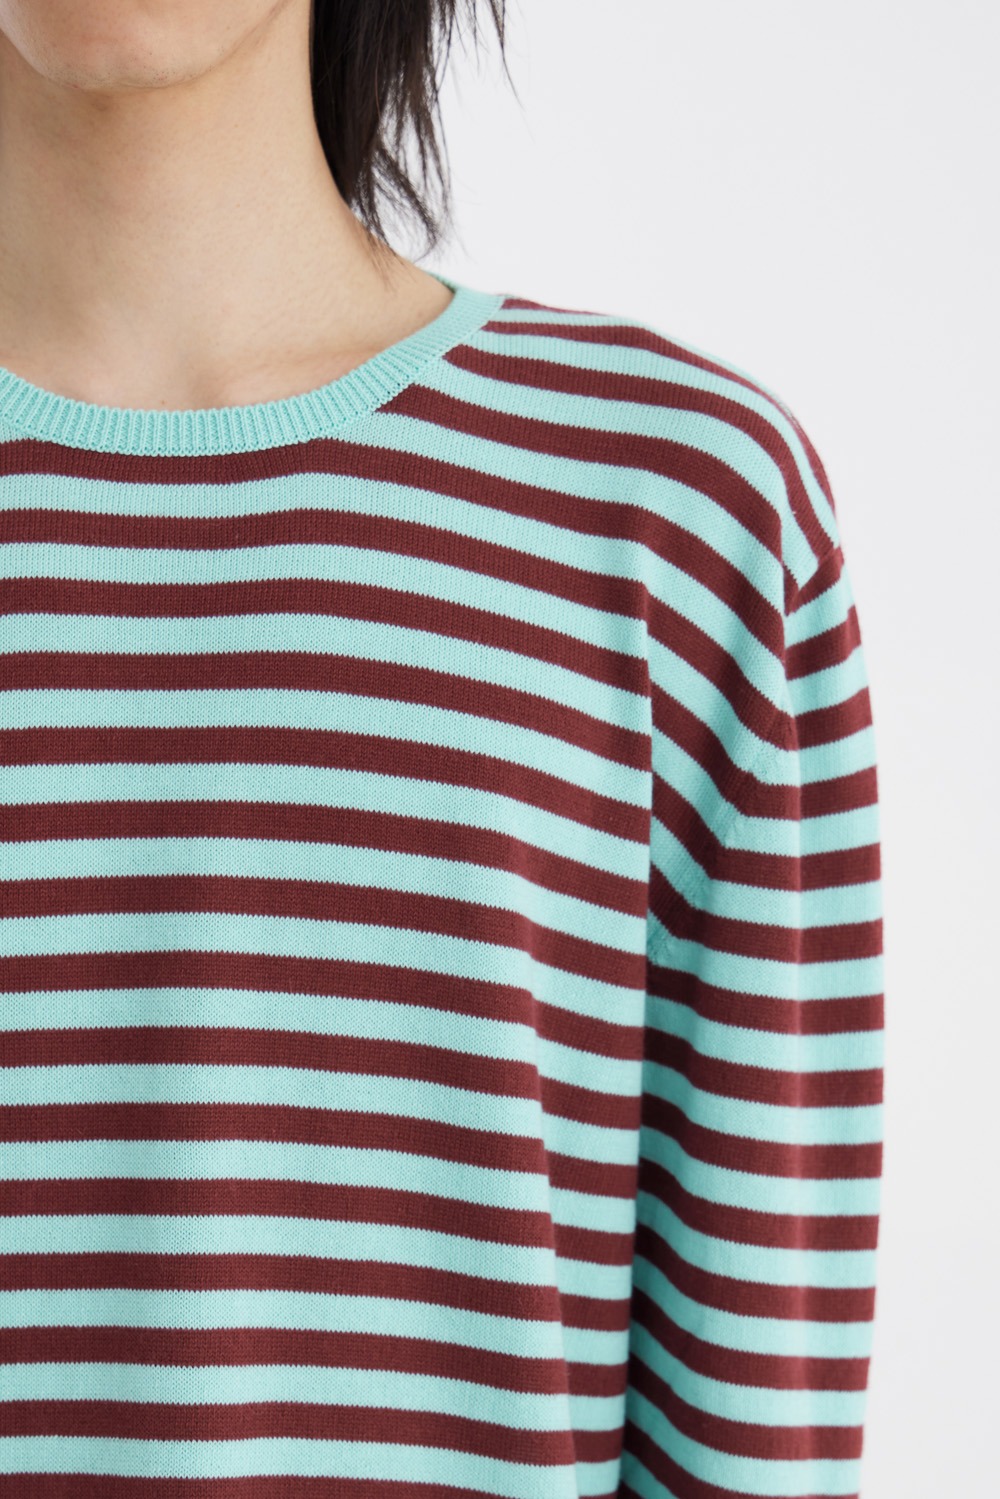 Punk Stripe Sweater-Aqua Green/Burgundy